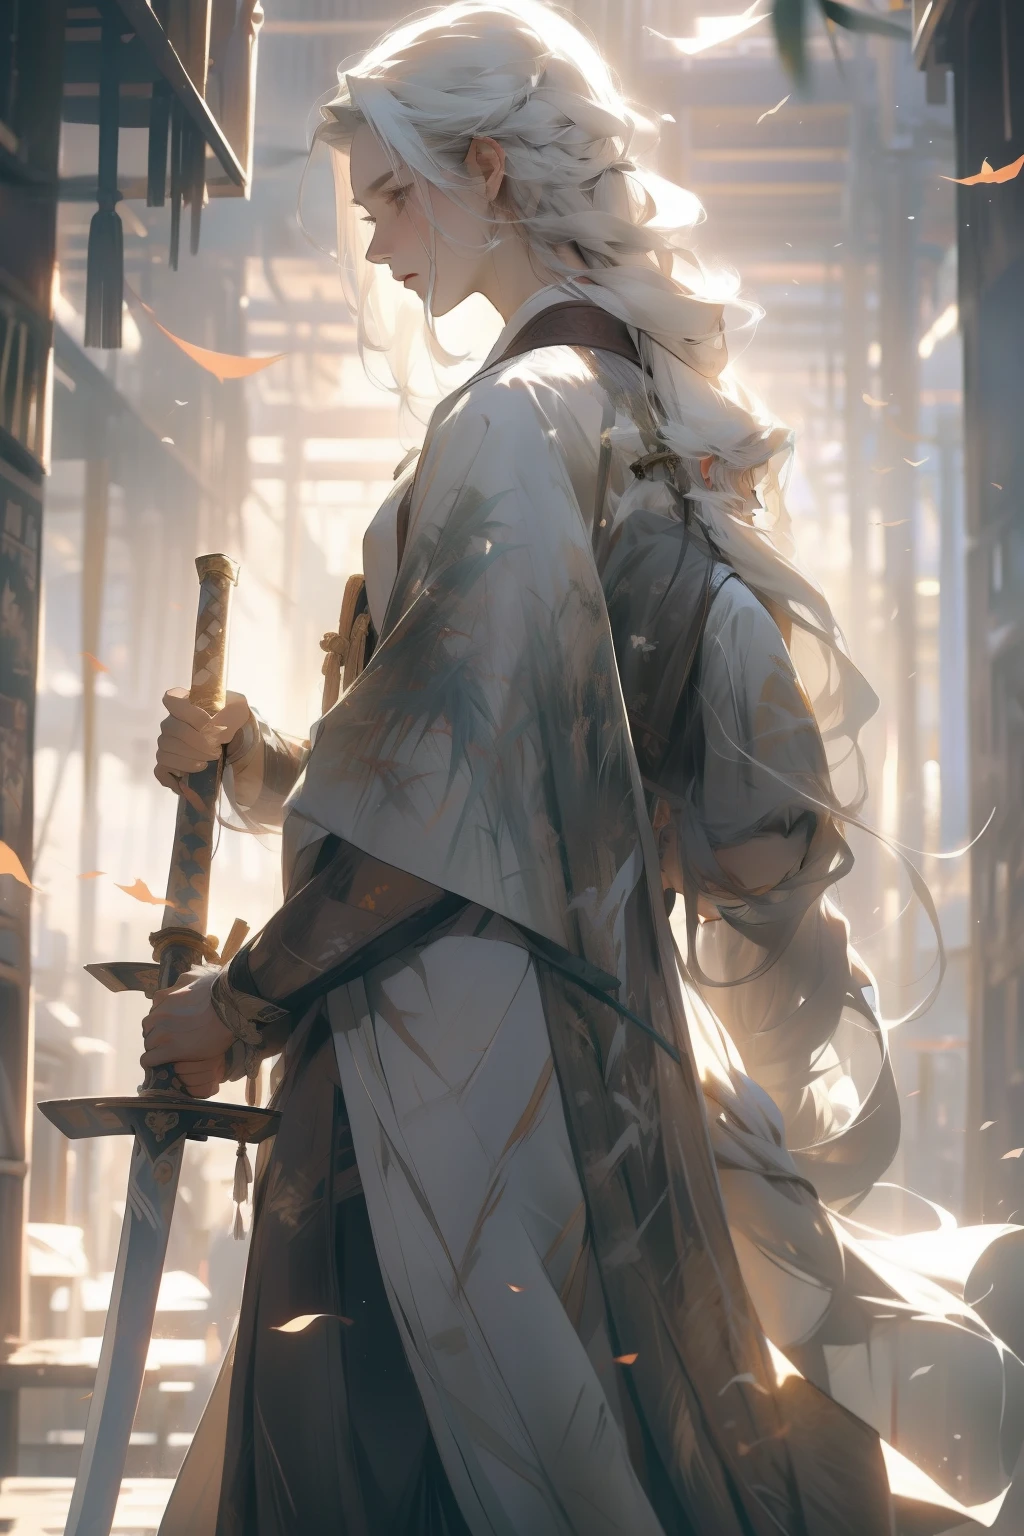 A 男人 with long white hair,站在竹林里,拿着长剑,背对,穿白色长袍,握住流光剑,男人